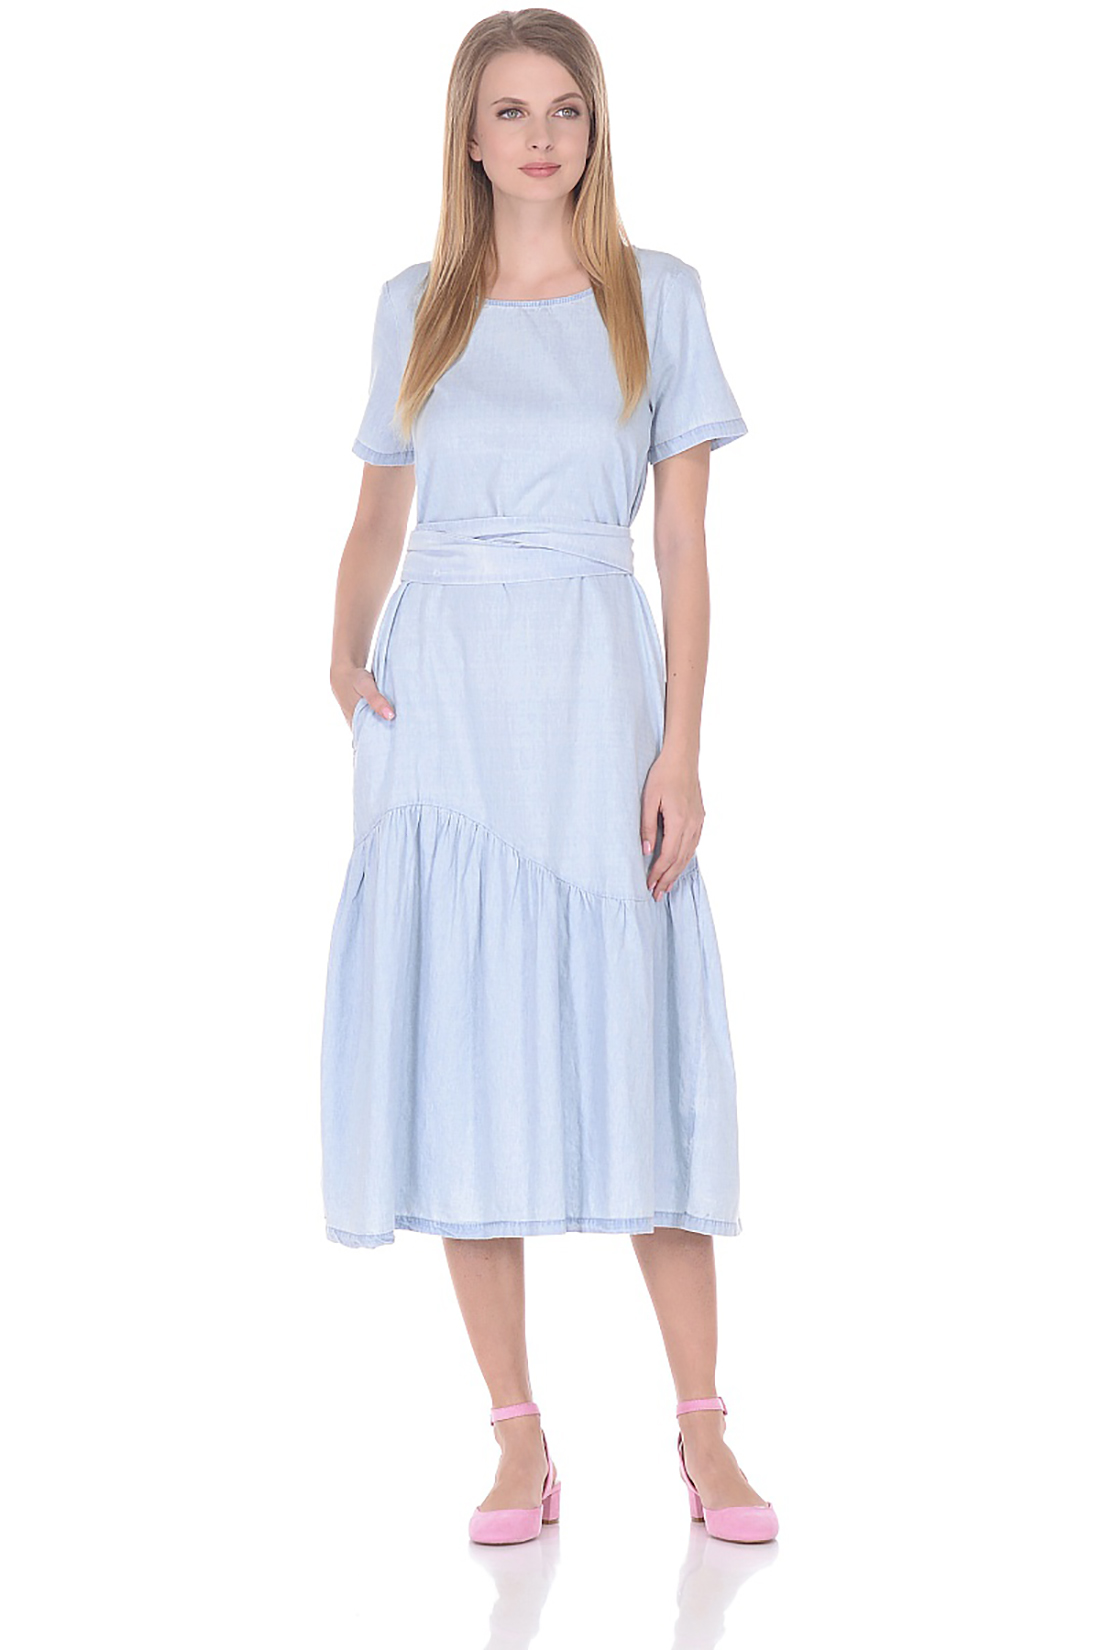 Платье с асимметричной оборкой (арт. baon B458079), размер 3XL, цвет light blue denim#голубой Платье с асимметричной оборкой (арт. baon B458079) - фото 1